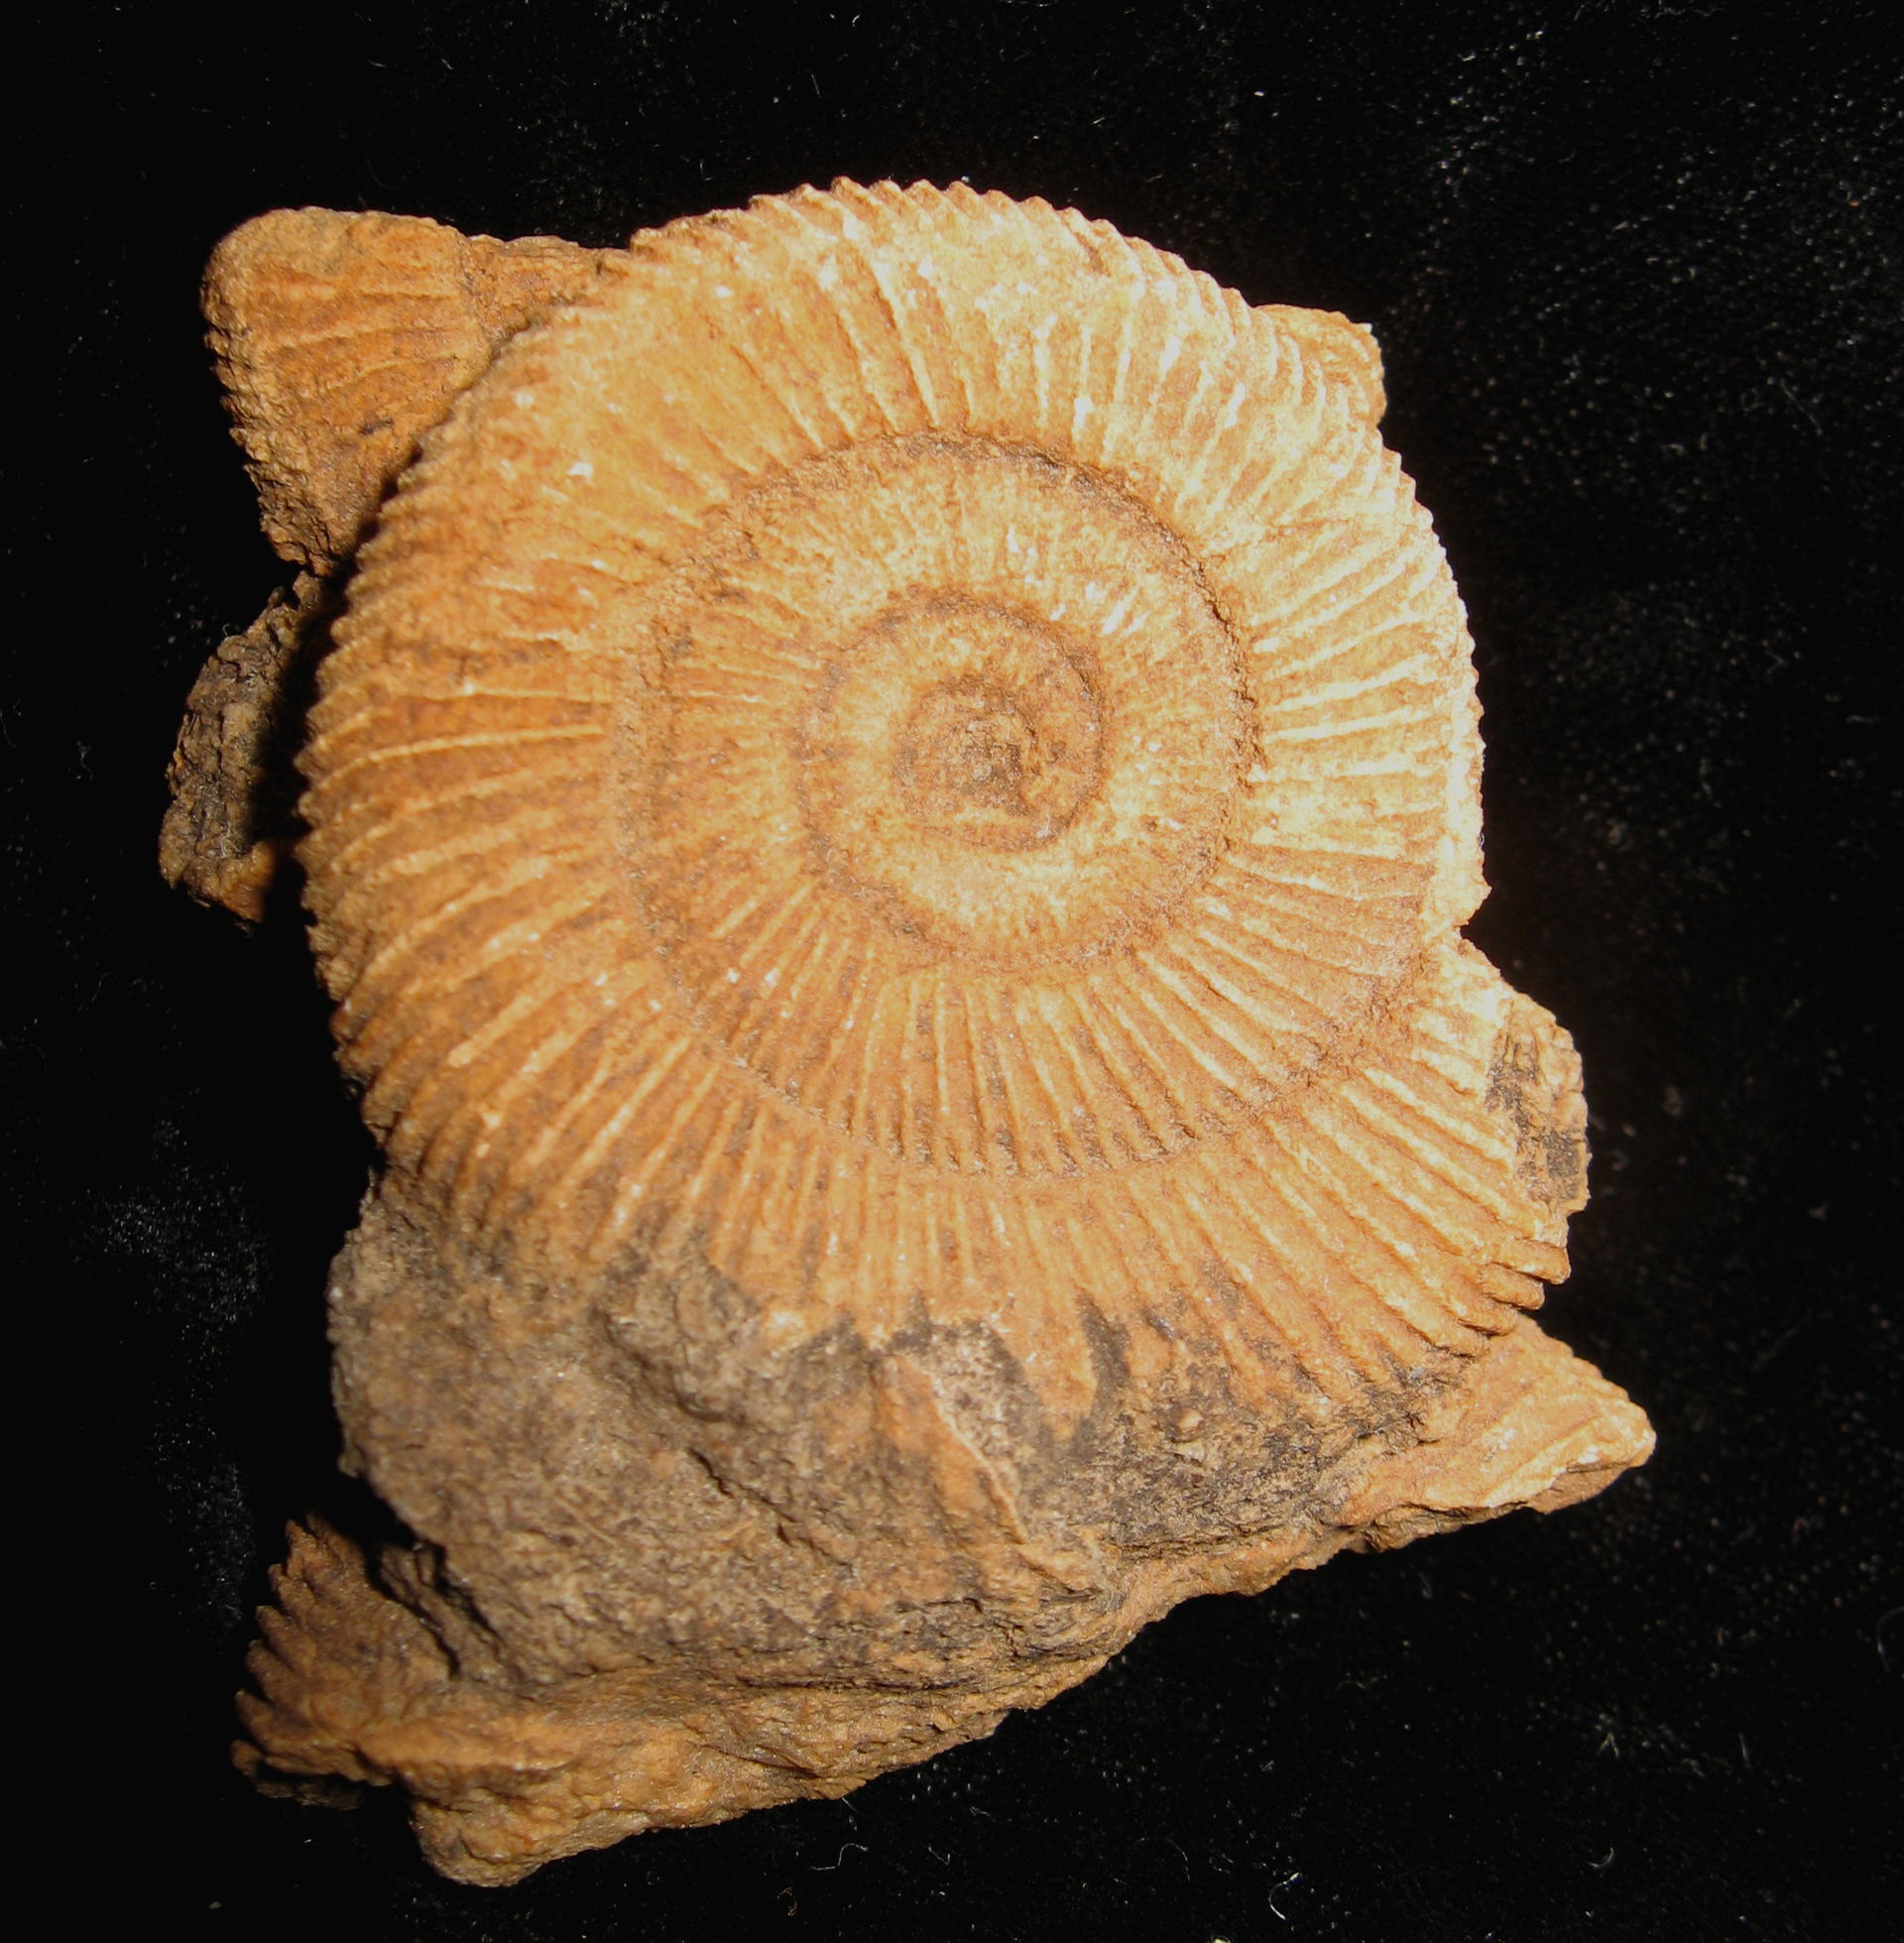 Ammonite on stamp of Isle of Man 2023